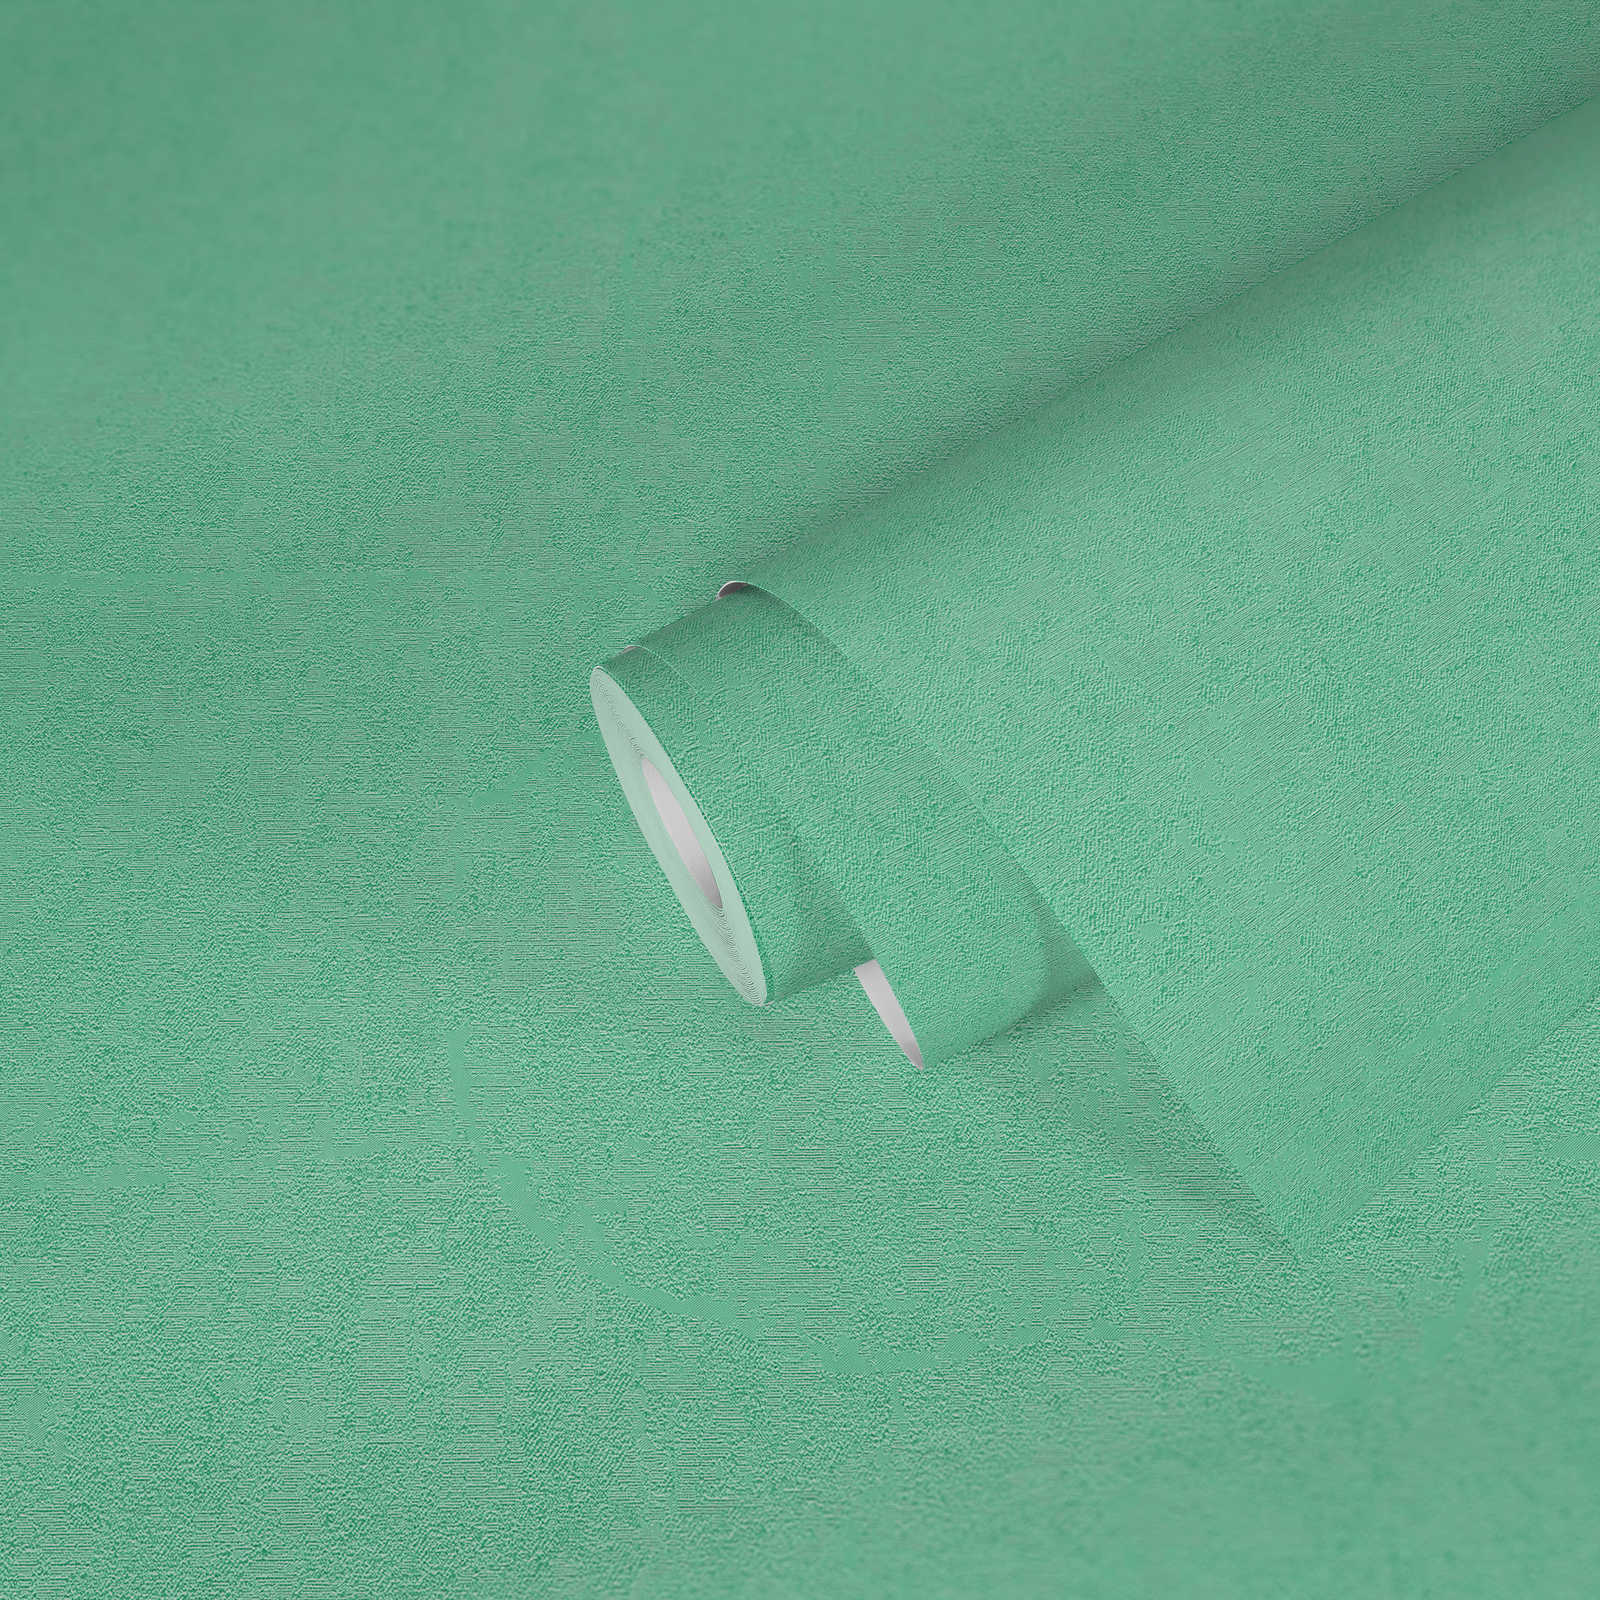             VERSACE Home Papier peint uni menthe avec effet chatoyant - vert
        